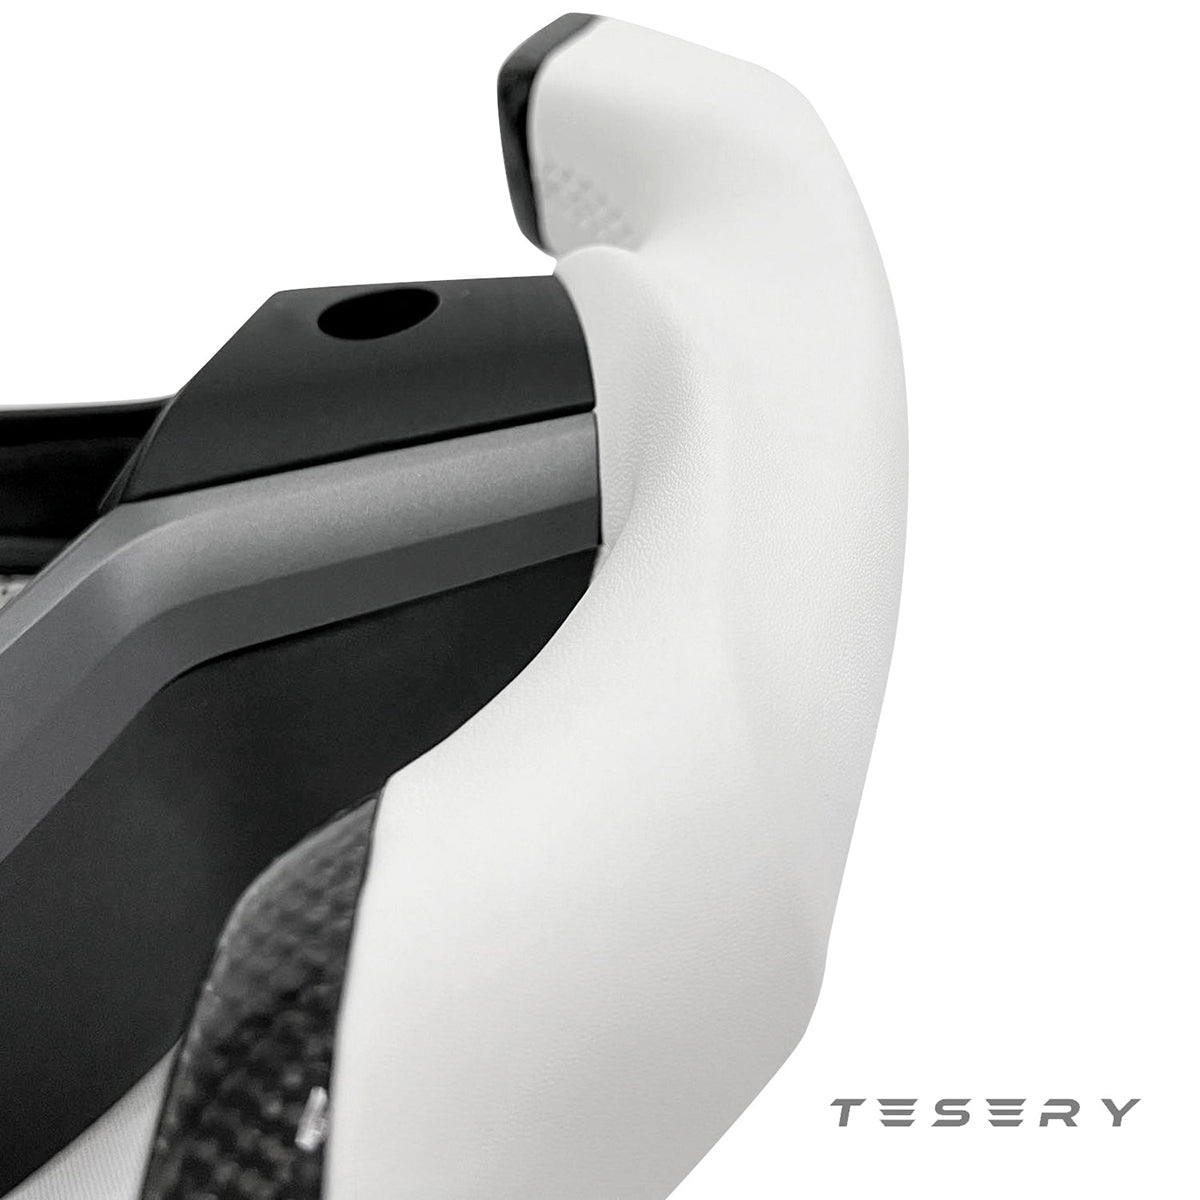 Roadster Steering Wheel for Tesla Model 3 / Y【Airplane wheel】 - Tesery Official Store